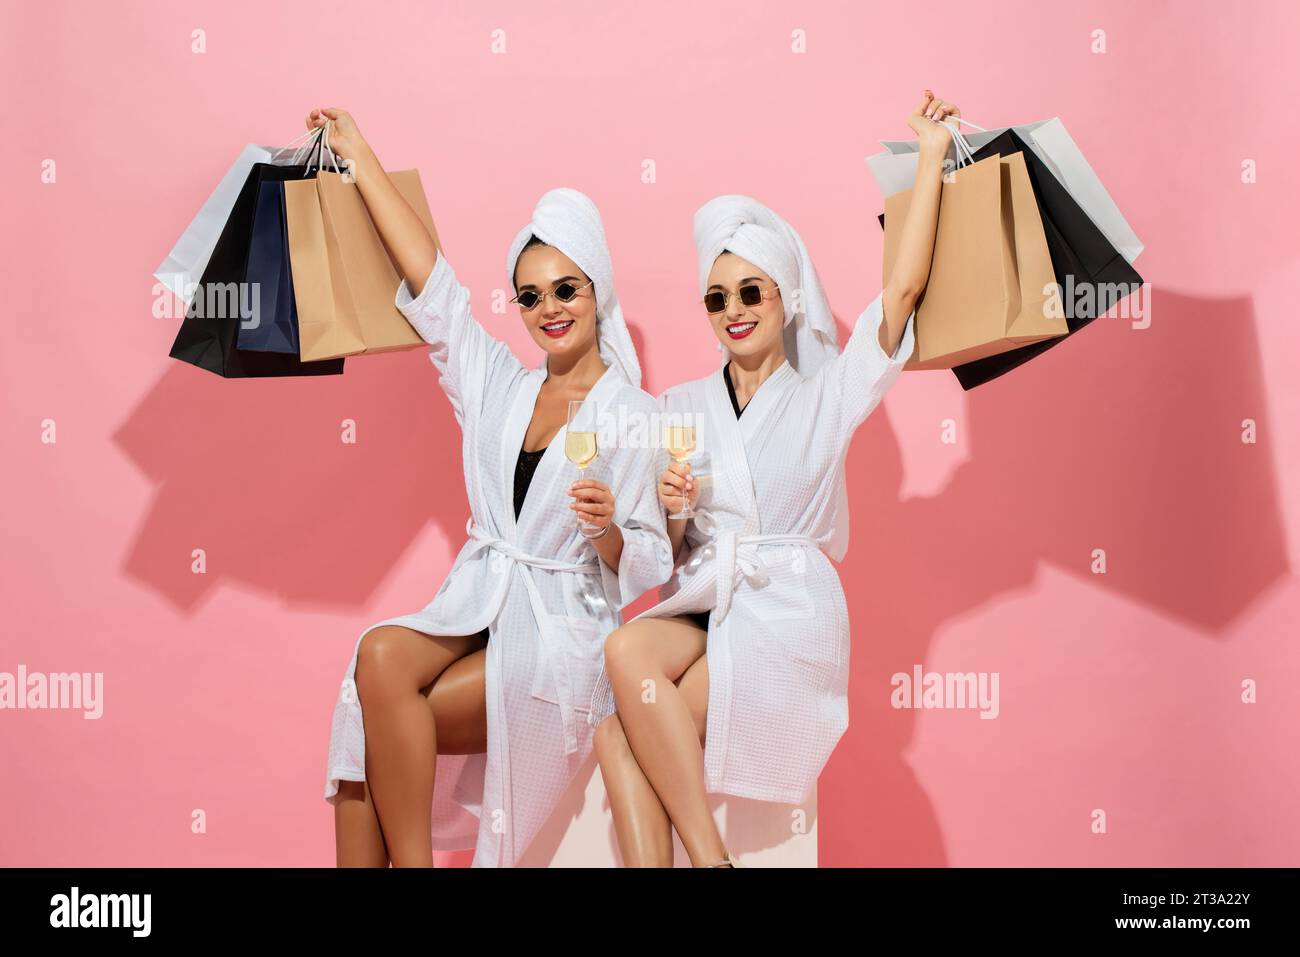 Zwei Freundinnen in Bademantel mit Einkaufstaschen und Getränken in rosafarbener Farbe isolierte Hintergrundaufnahme im Studio Stockfoto